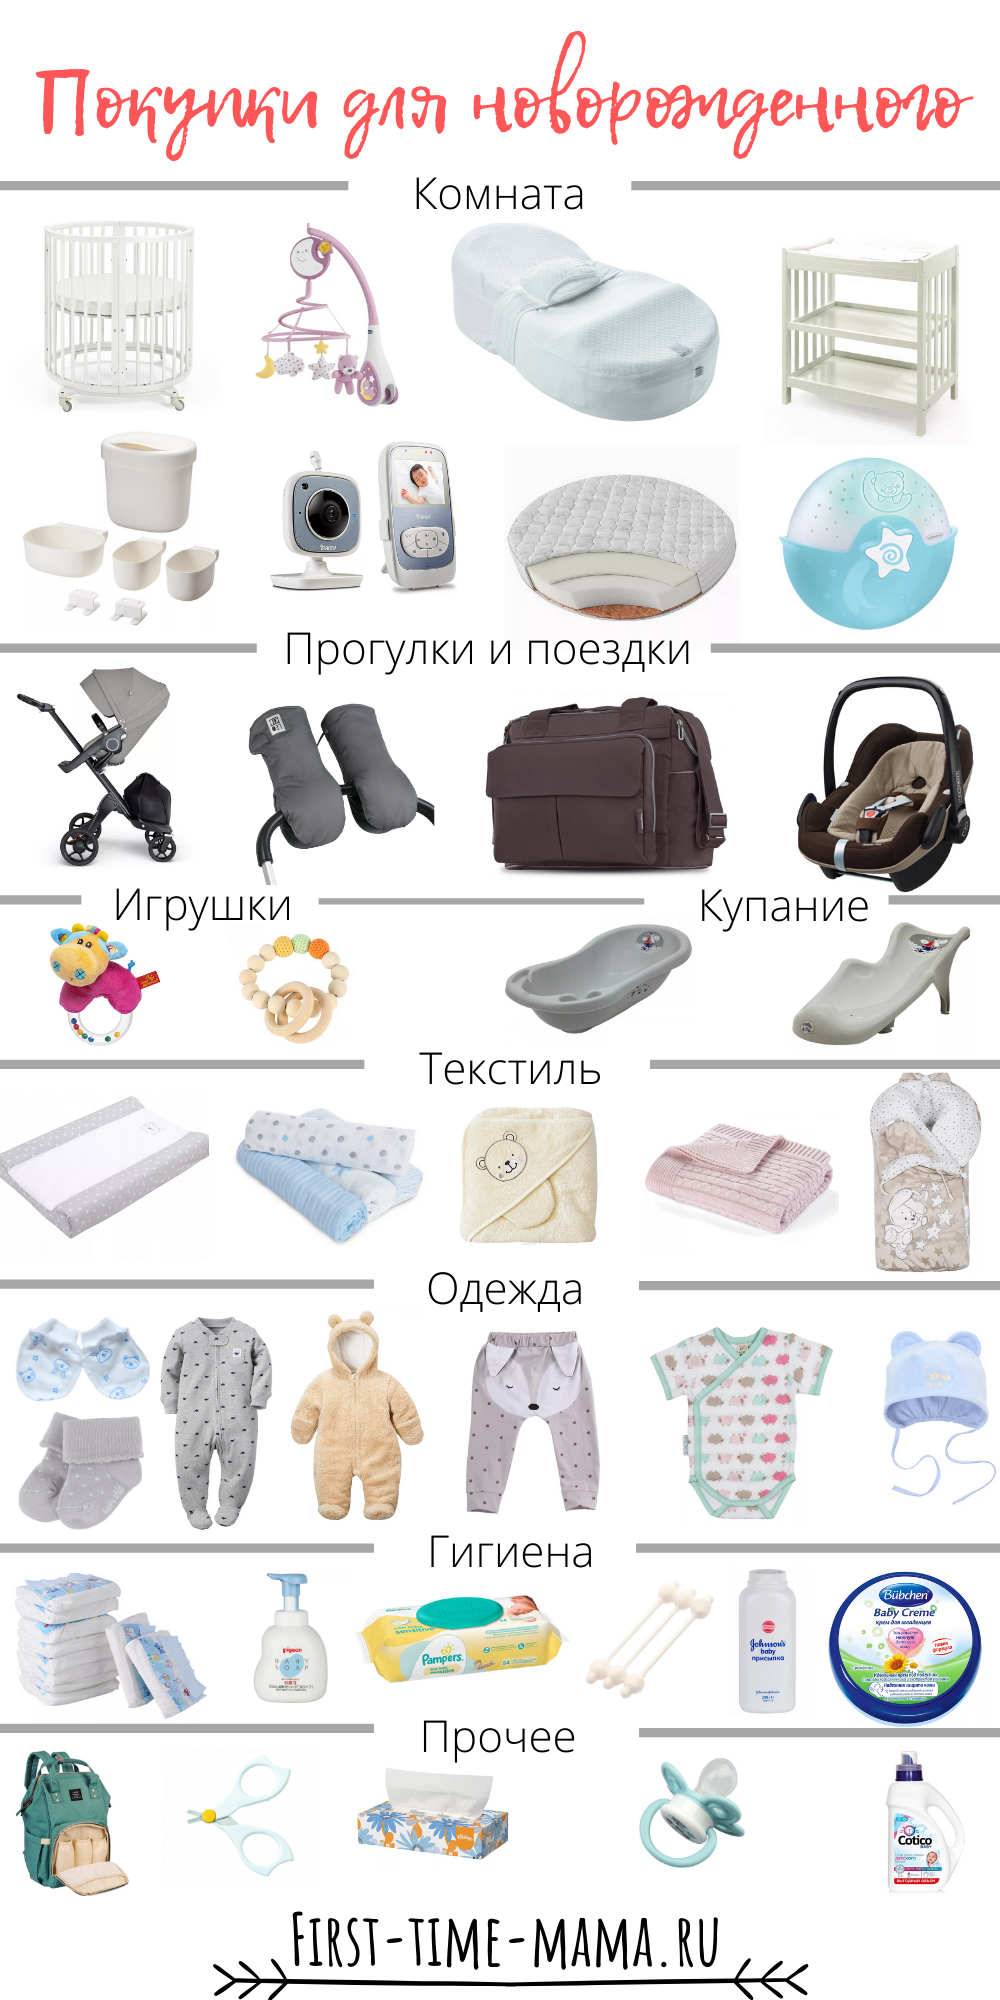 Что нужно малышу в первый. Вещи первой необходимости для новорожденного после роддома. Одежда для новорожденного список необходимого. Список вещей для новорожденного. Список однждыдля новорожденного.